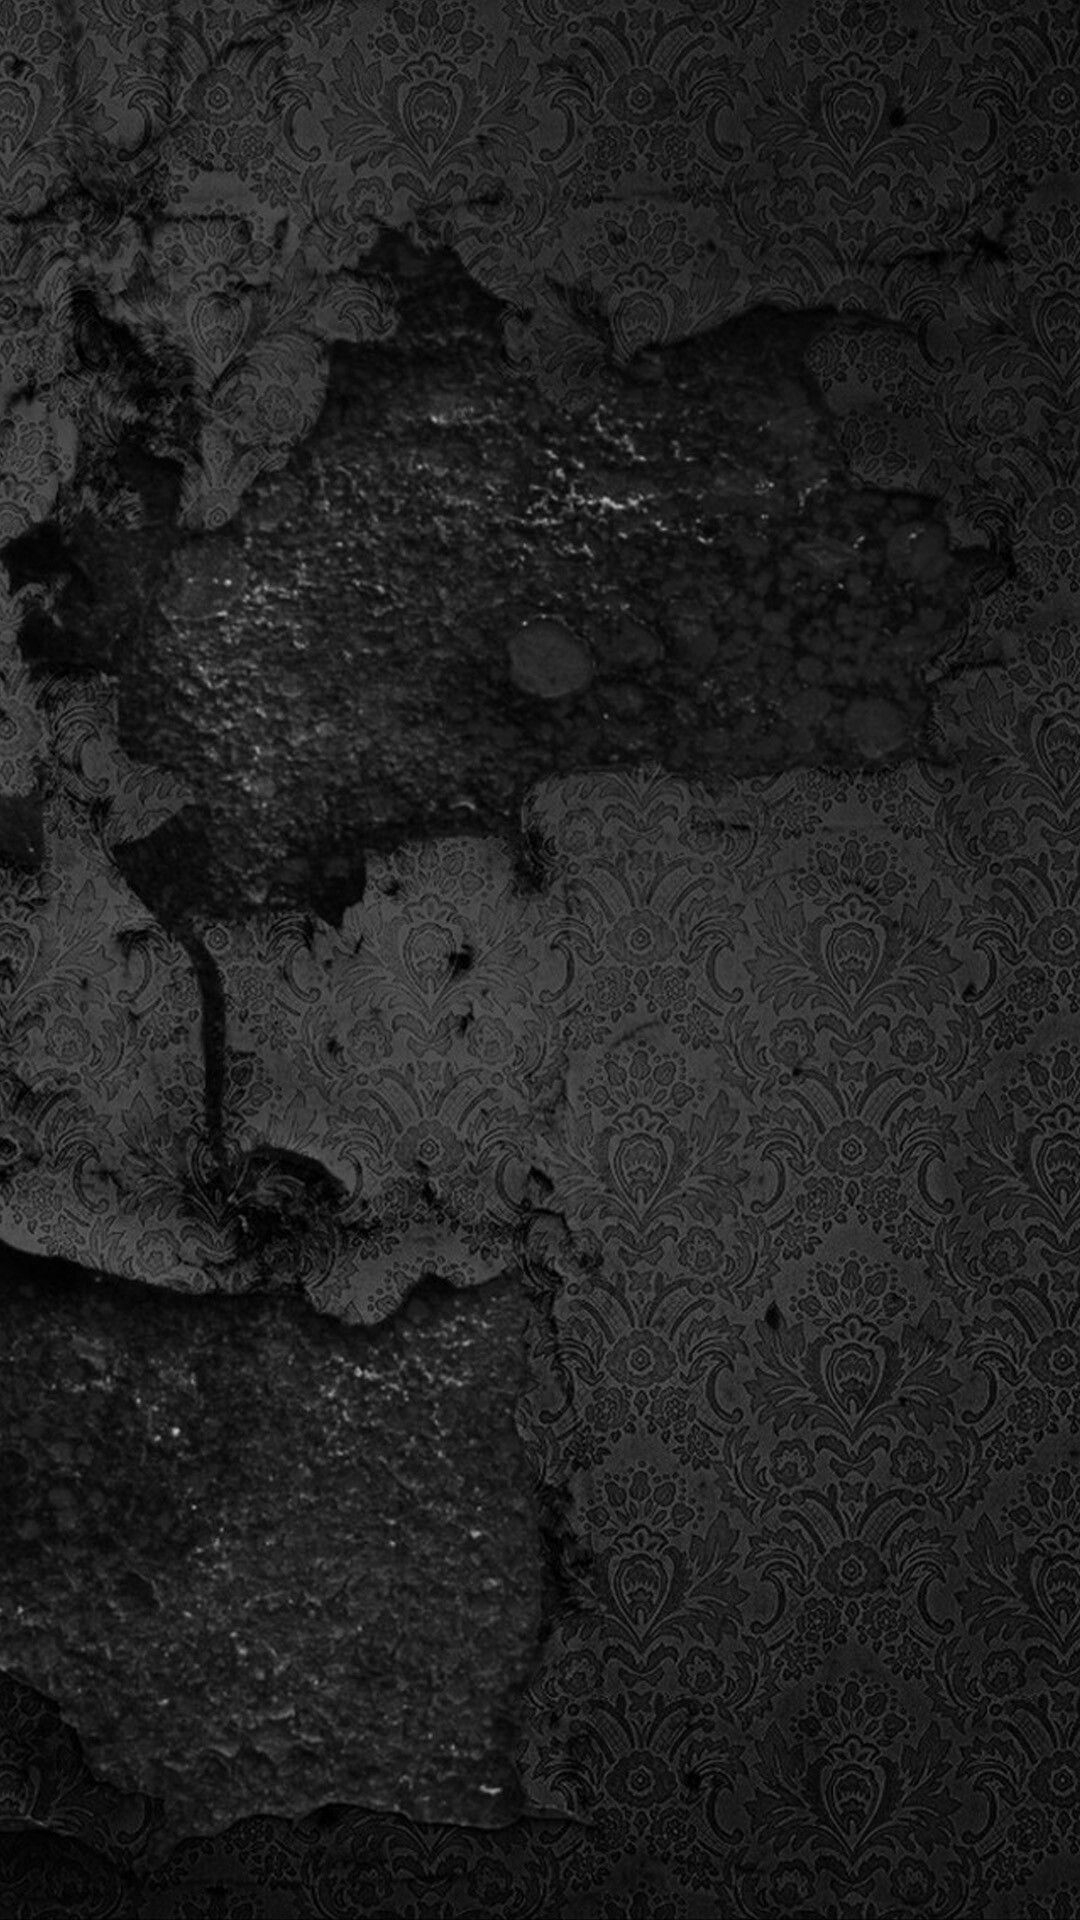 1080x1920 Rustic Black Wall Wallpaper | Black wallpaper iphone, Black wallpaper, Iphone 6 plus wallpaper